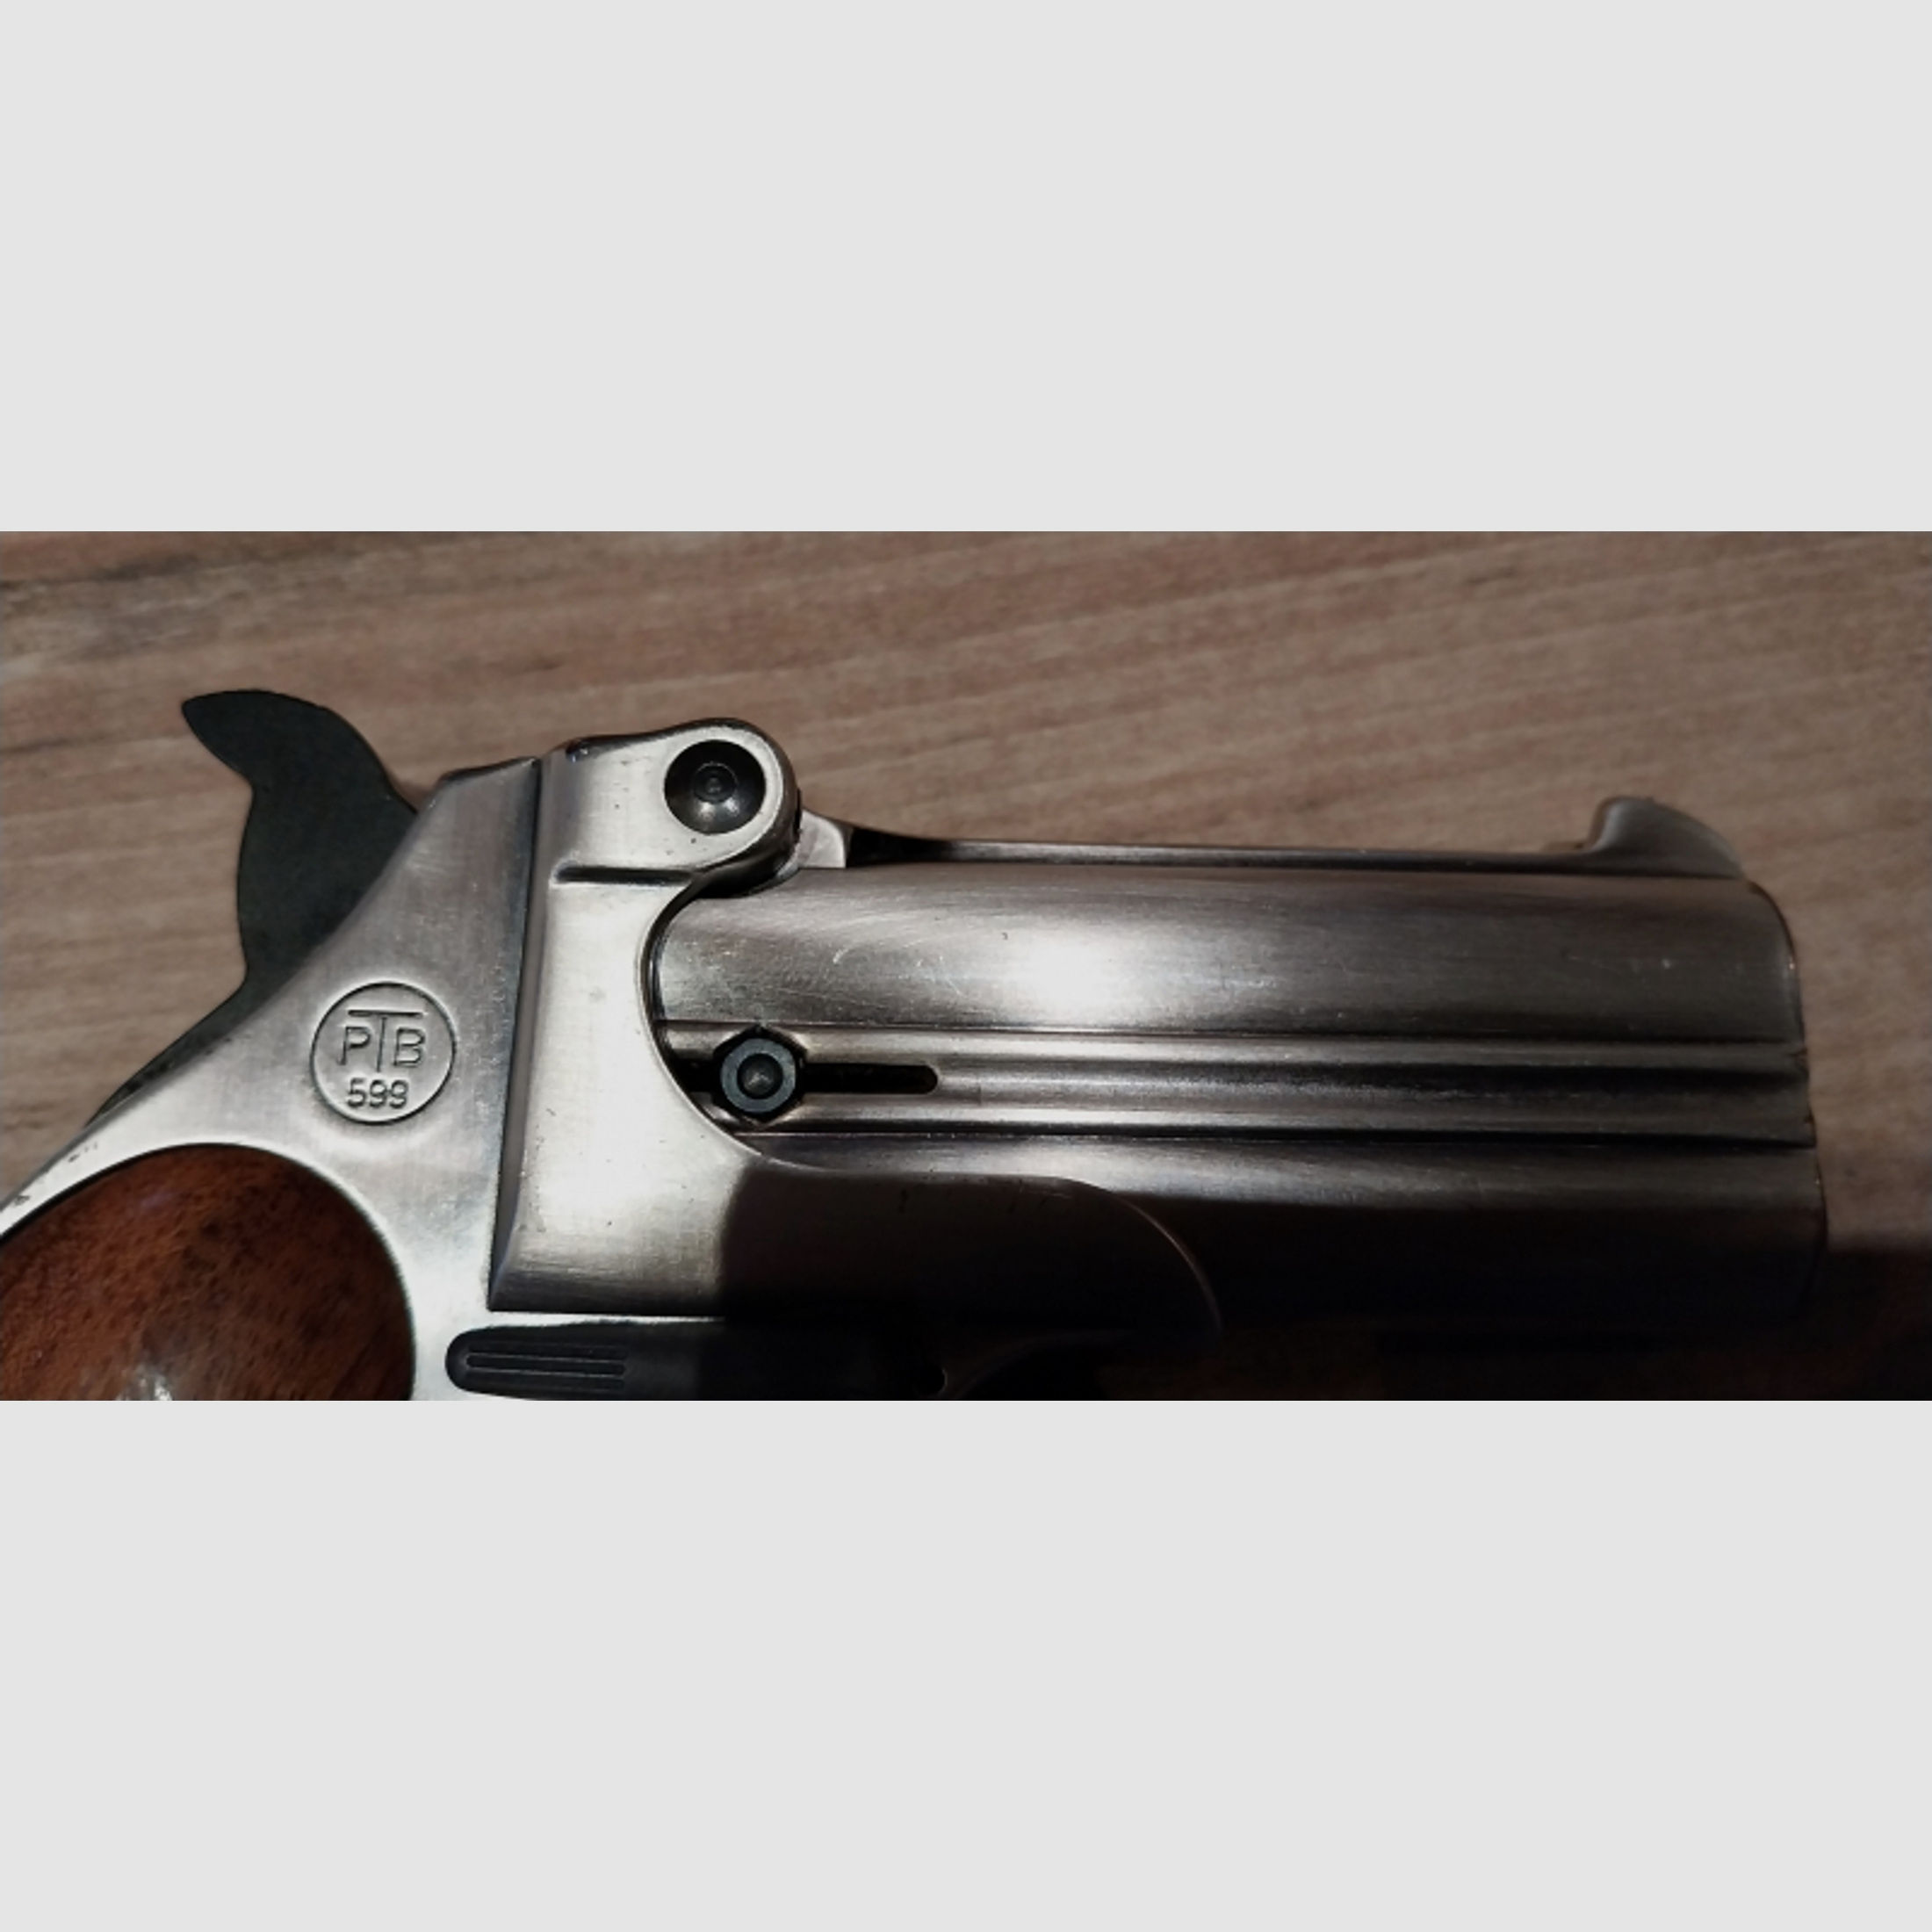 Derringer,, Noris Twinny,,9mm PAK mit der PTB 599 originaler Schachtel.